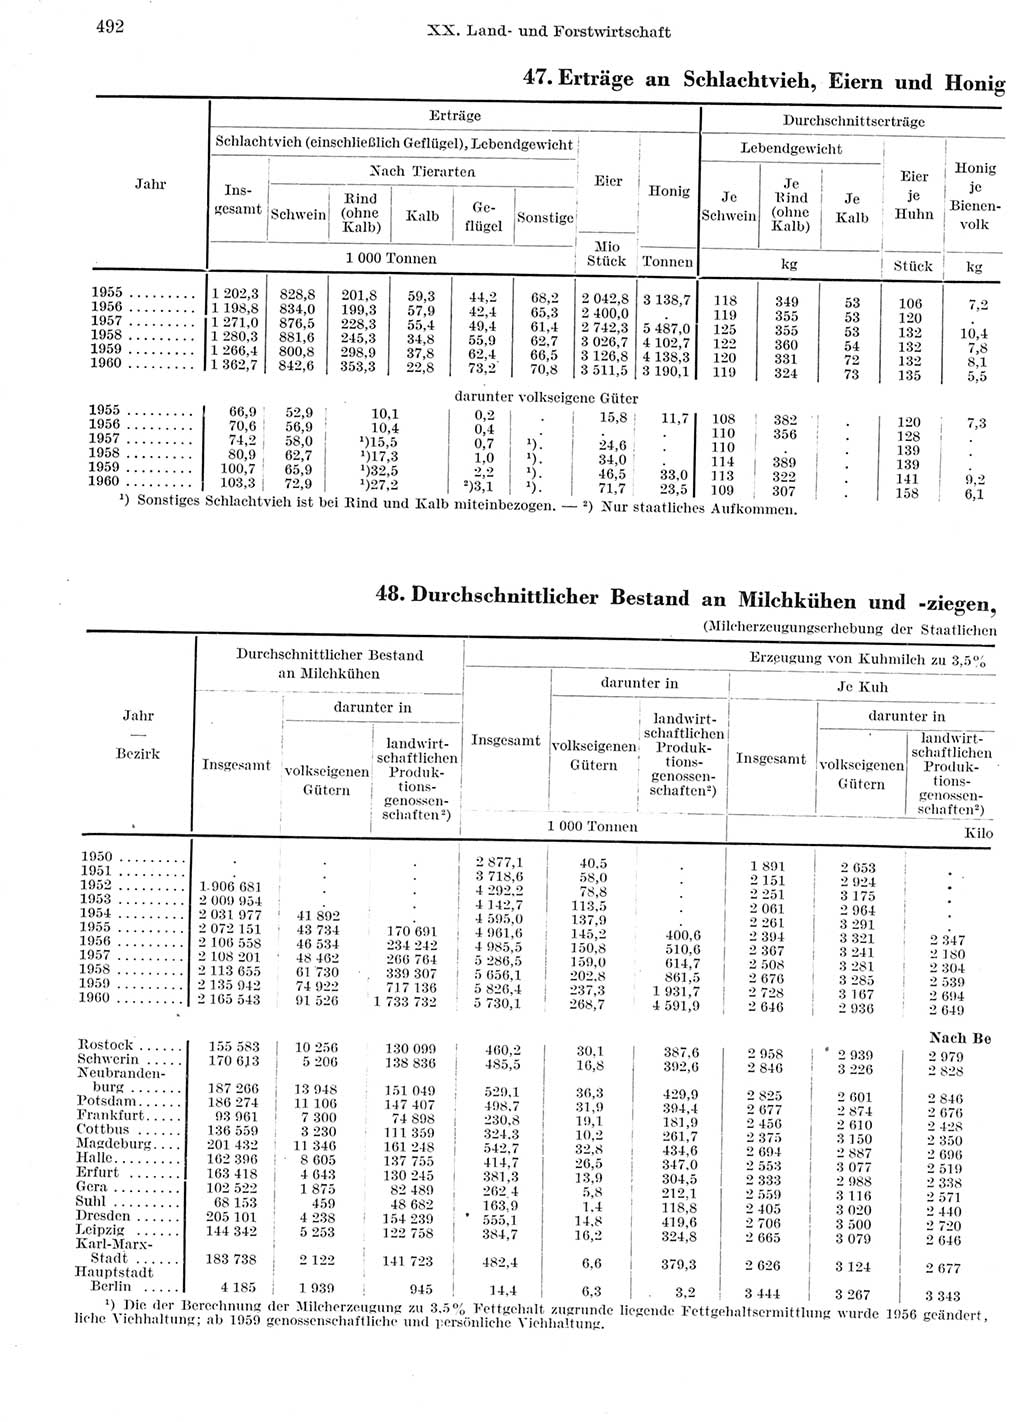 Statistisches Jahrbuch der Deutschen Demokratischen Republik (DDR) 1960-1961, Seite 492 (Stat. Jb. DDR 1960-1961, S. 492)